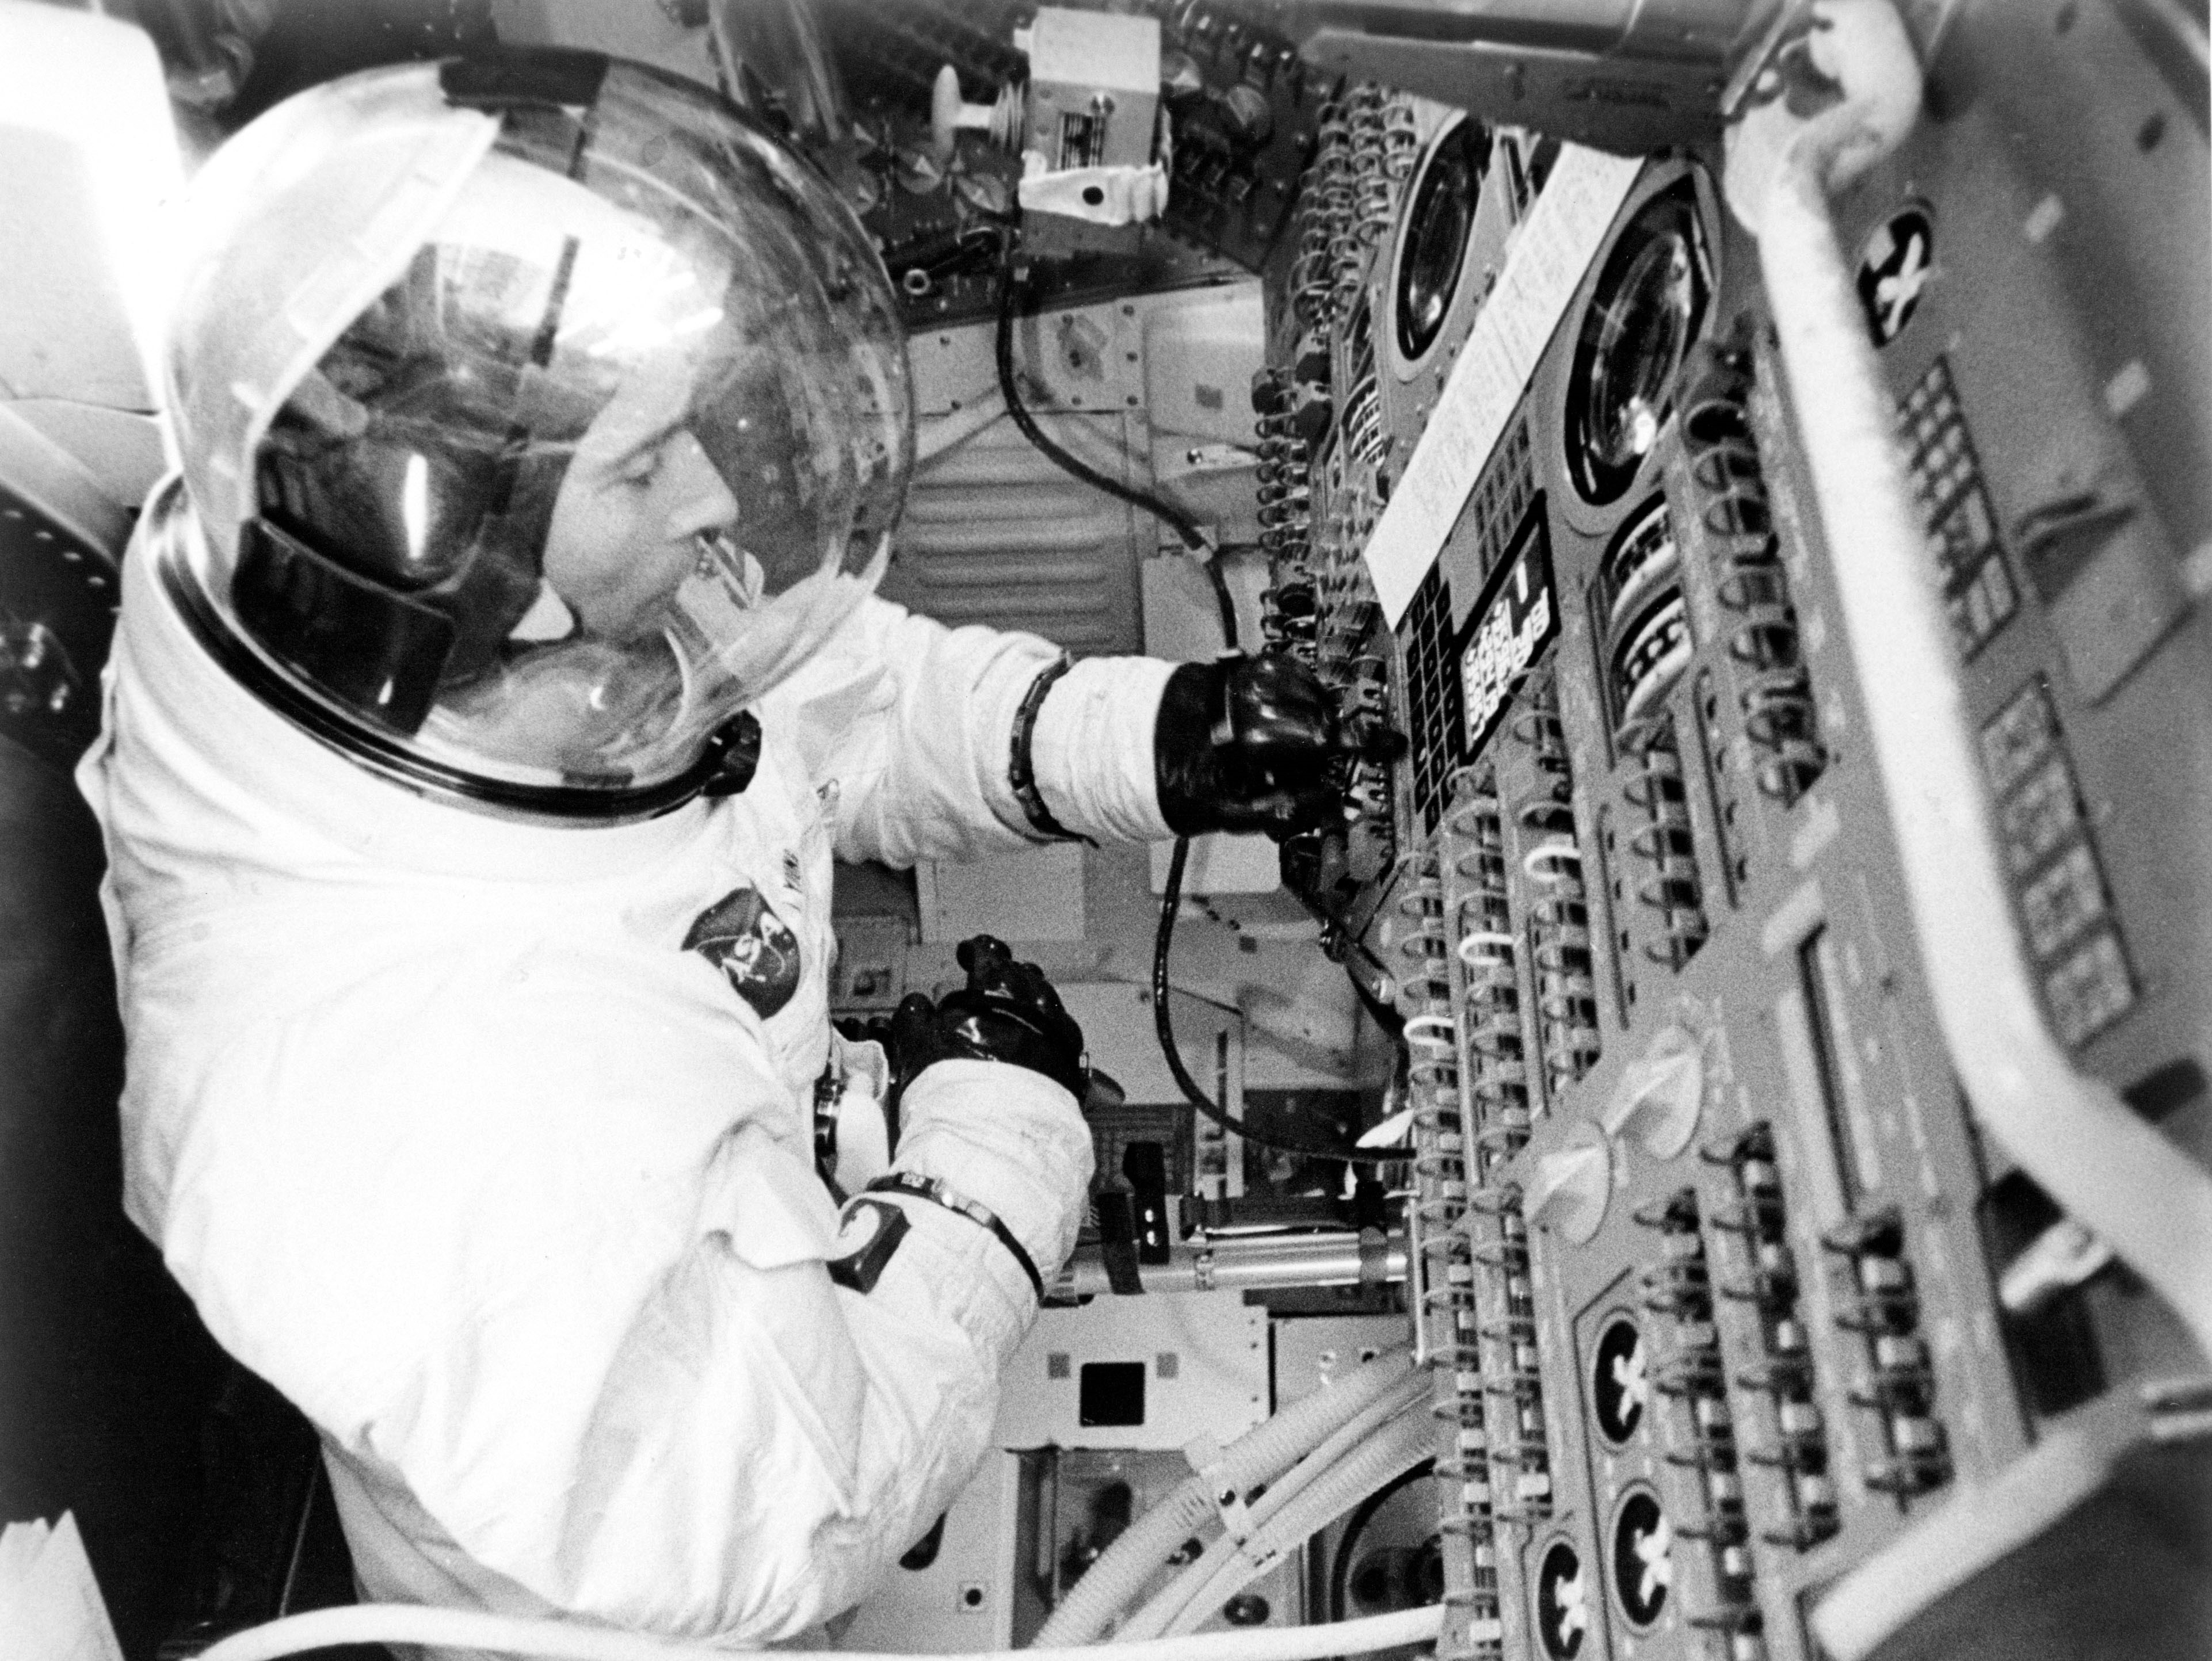 Apollo 10 astronaut John W. Young in the Command Module simulator